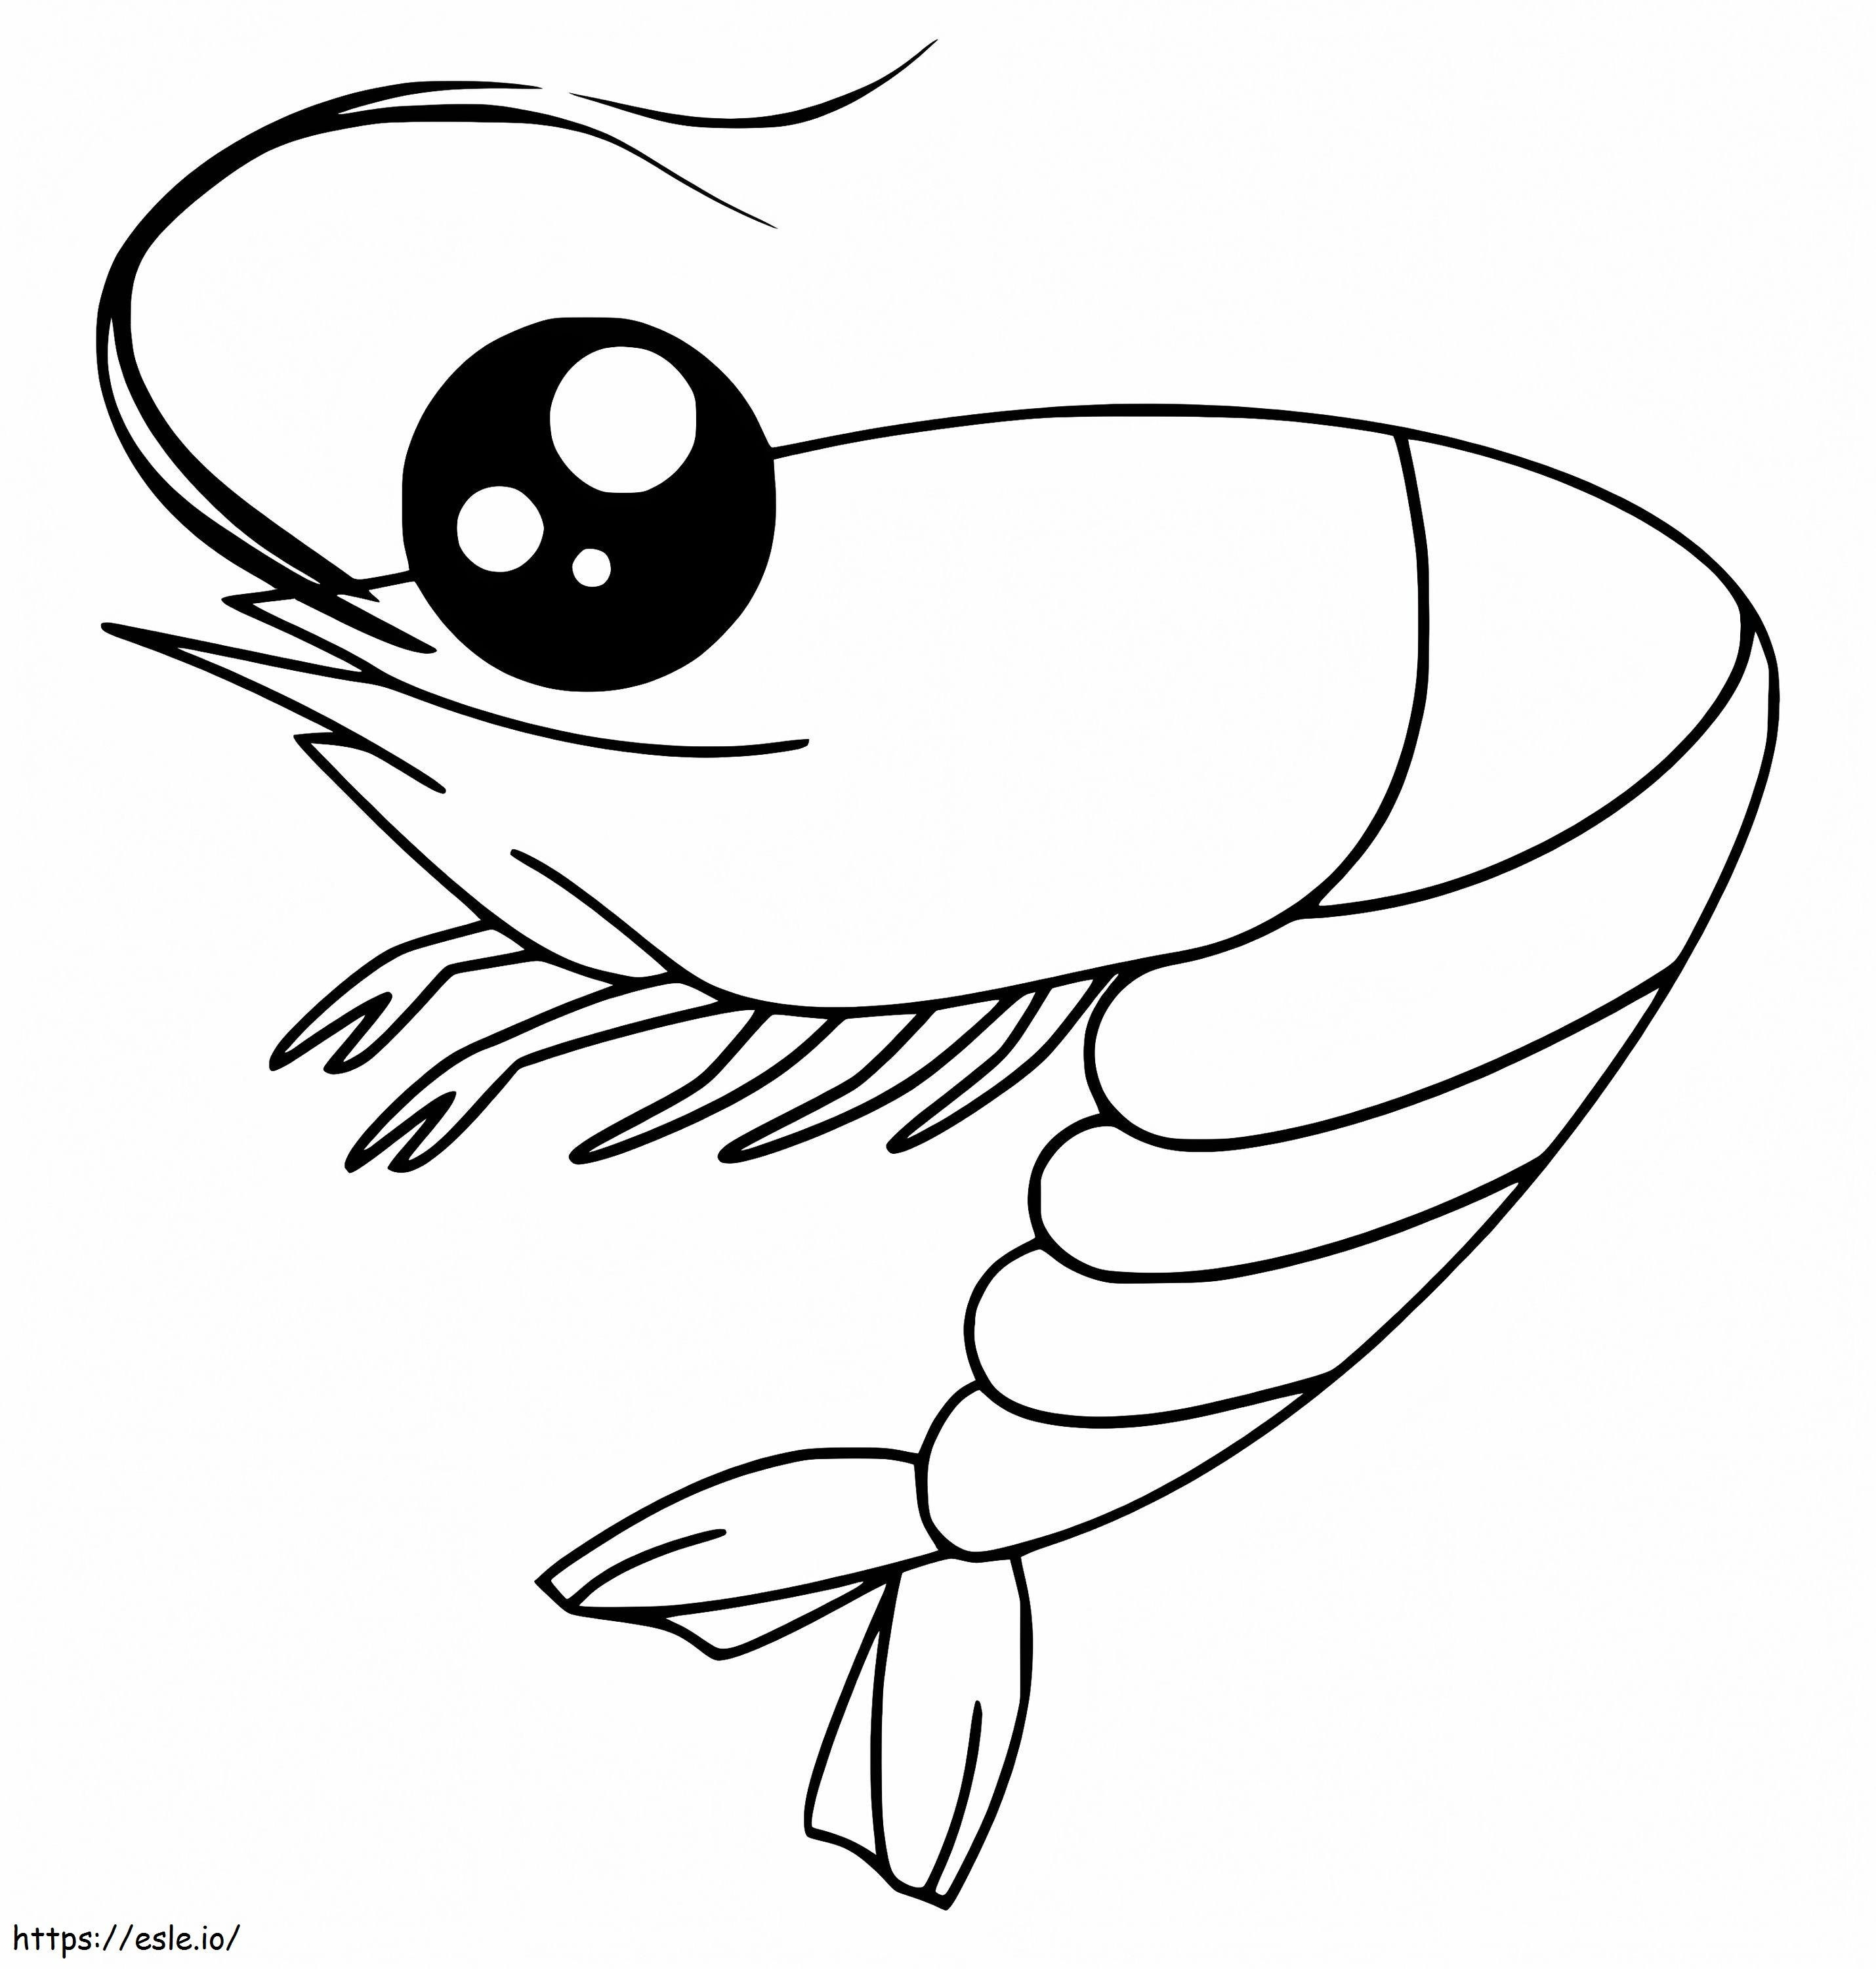 Adorable Shrimp coloring page